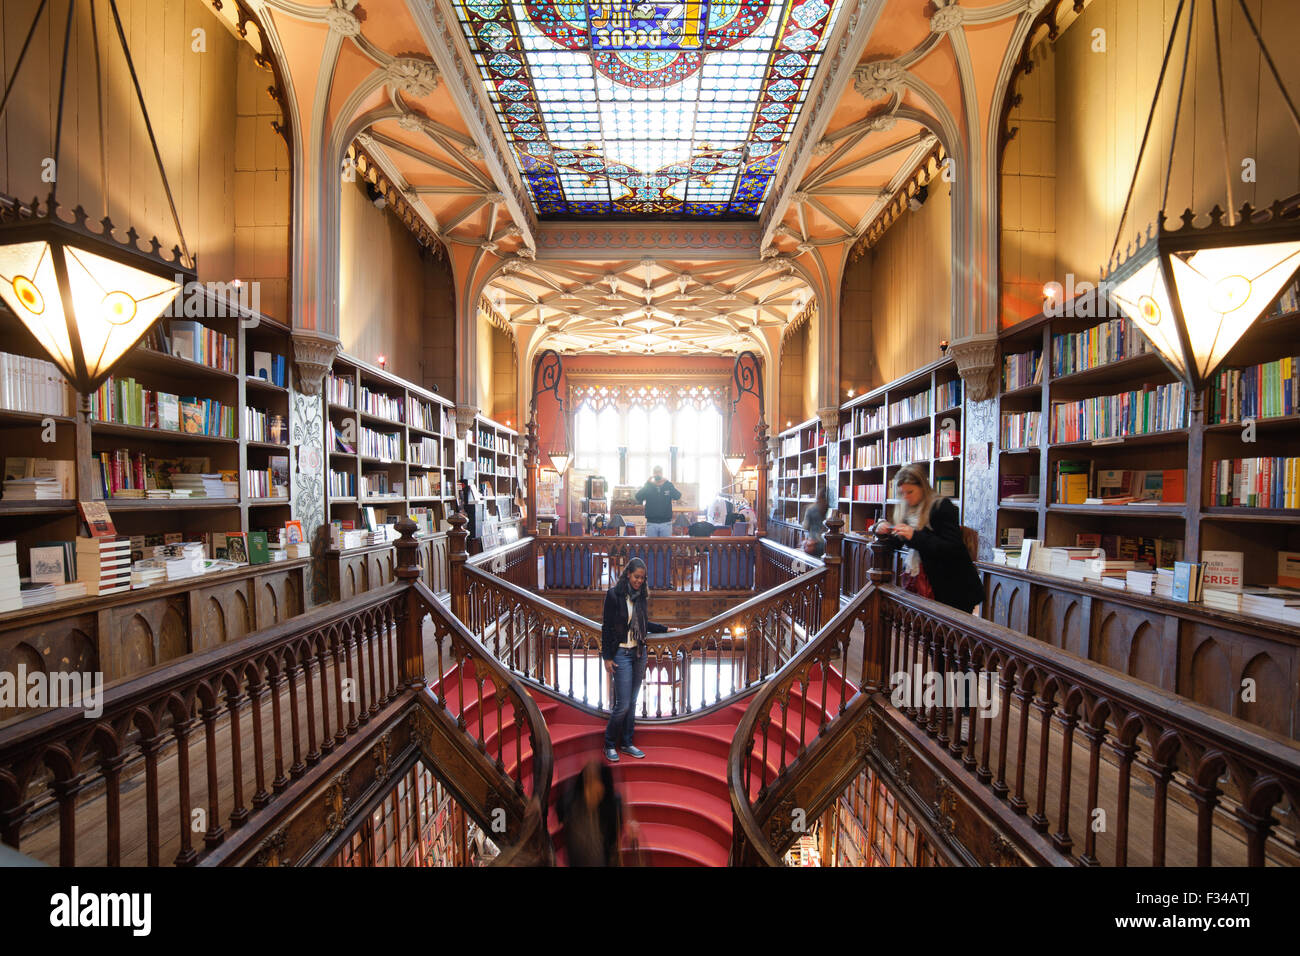 Lello and Irmao Bookshop interior in Porto, Portugal Stock Photo